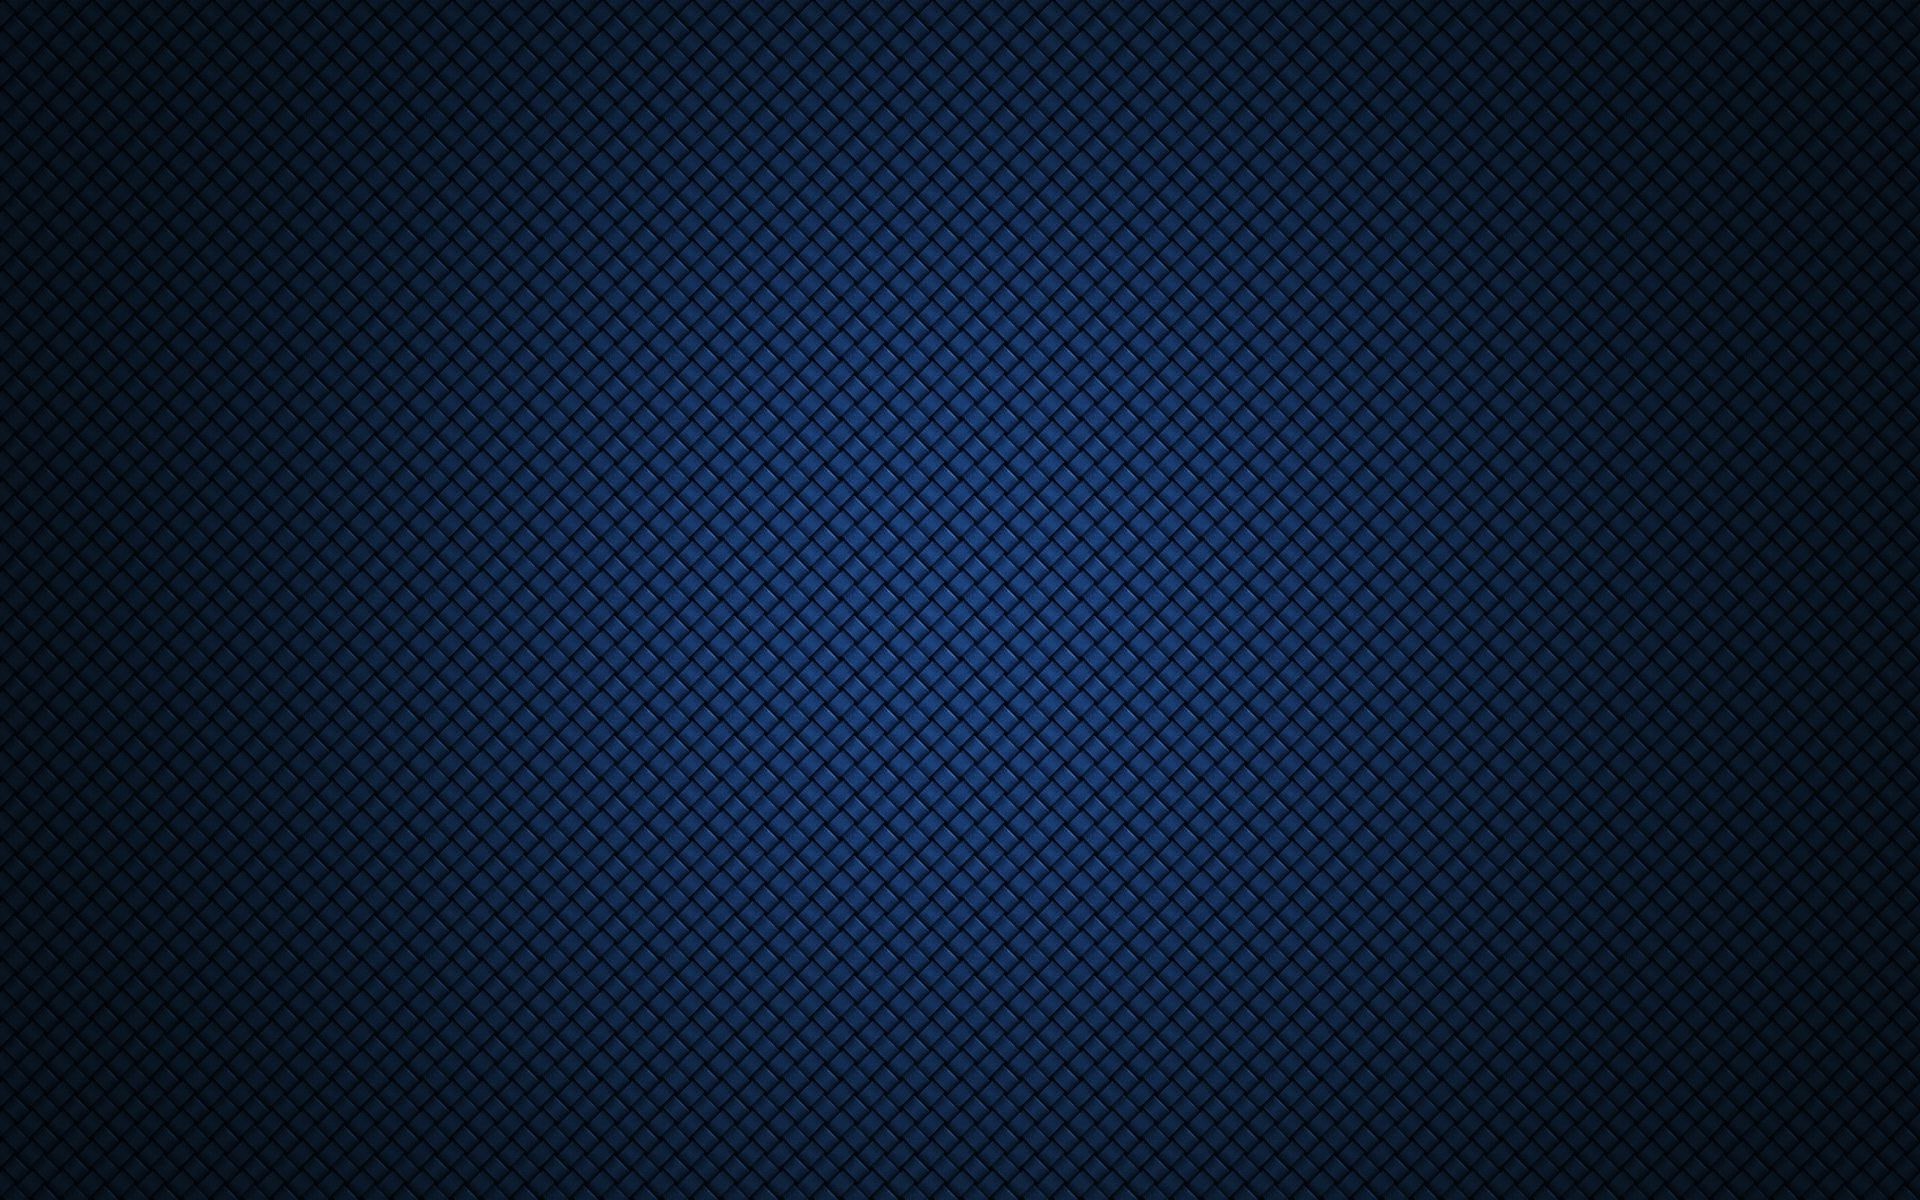 Dark Blue Background free download | PixelsTalk.Net